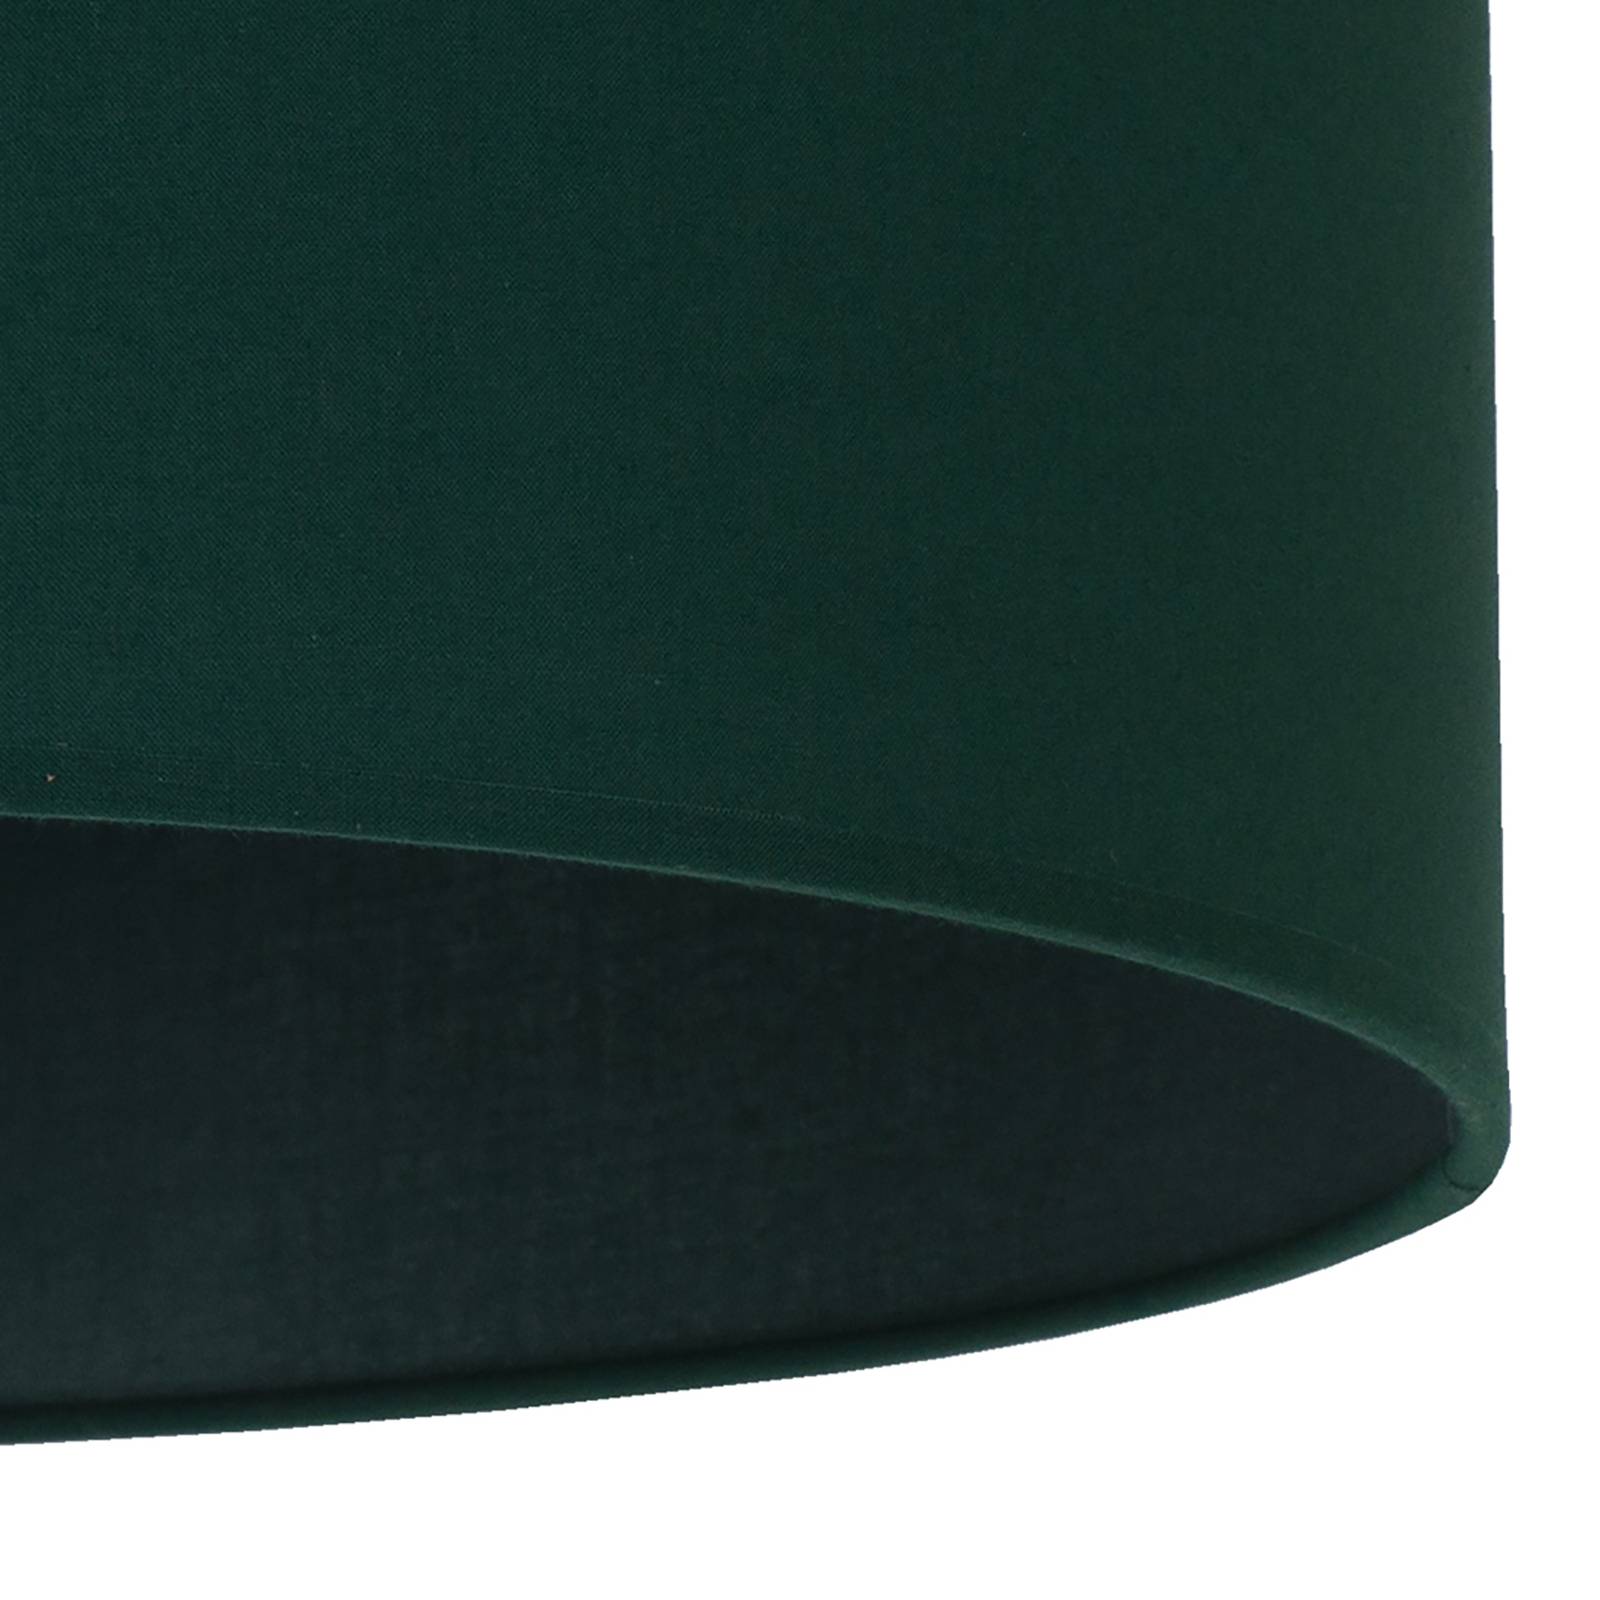 Roller lámpaernyő, zöld, Ø 40 cm, magasság 22 cm